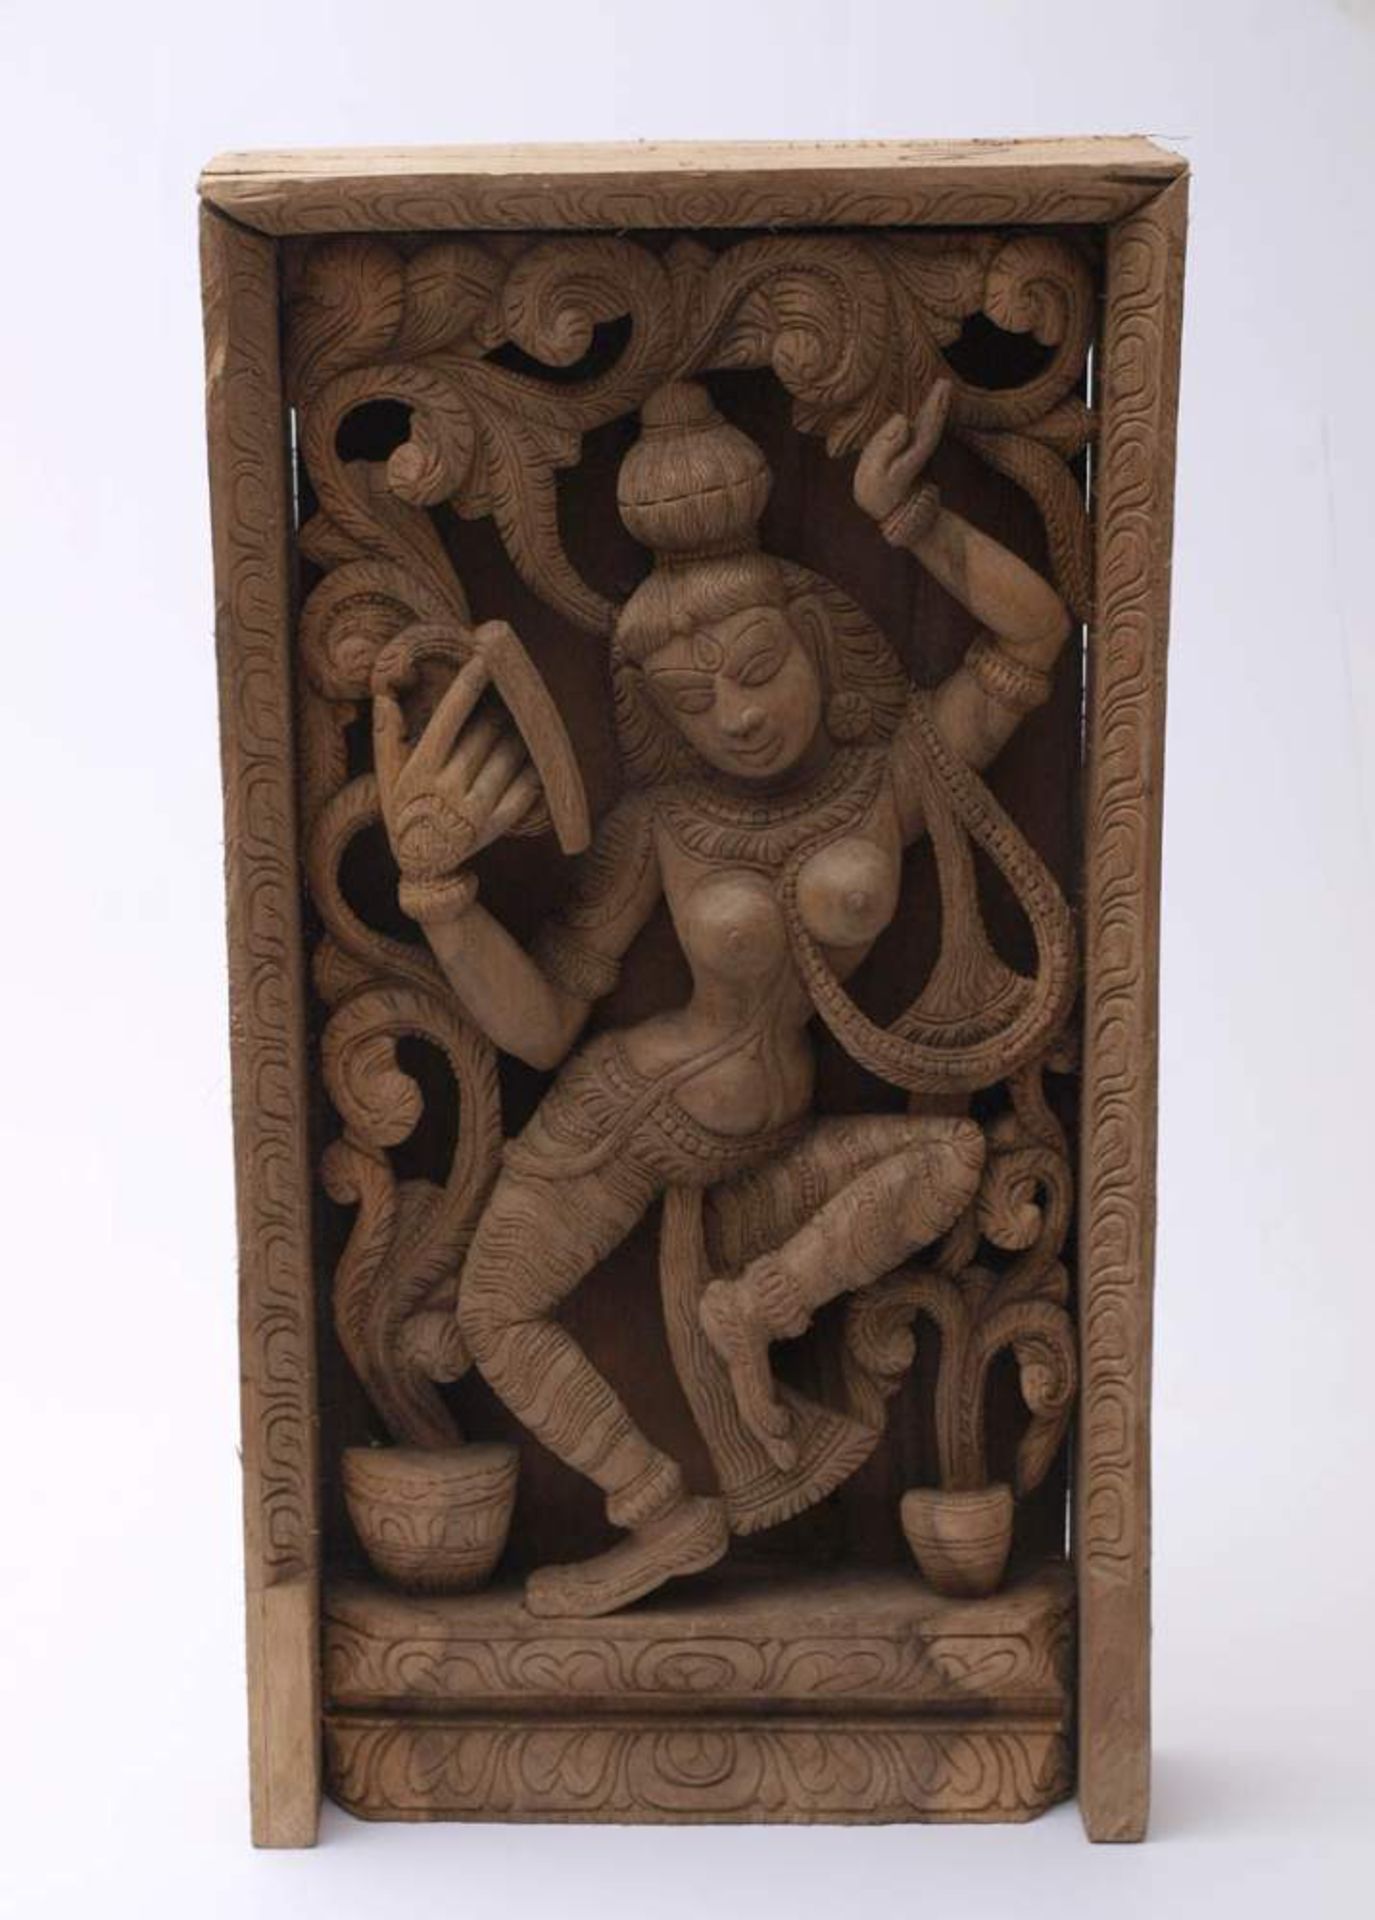 Stele, Indien, 18./19.Jhdt.Tanzende Göttin, darüber Sinha Vyahas. Geschnitztes Holz. 65x34,5x9,5cm. - Bild 2 aus 4